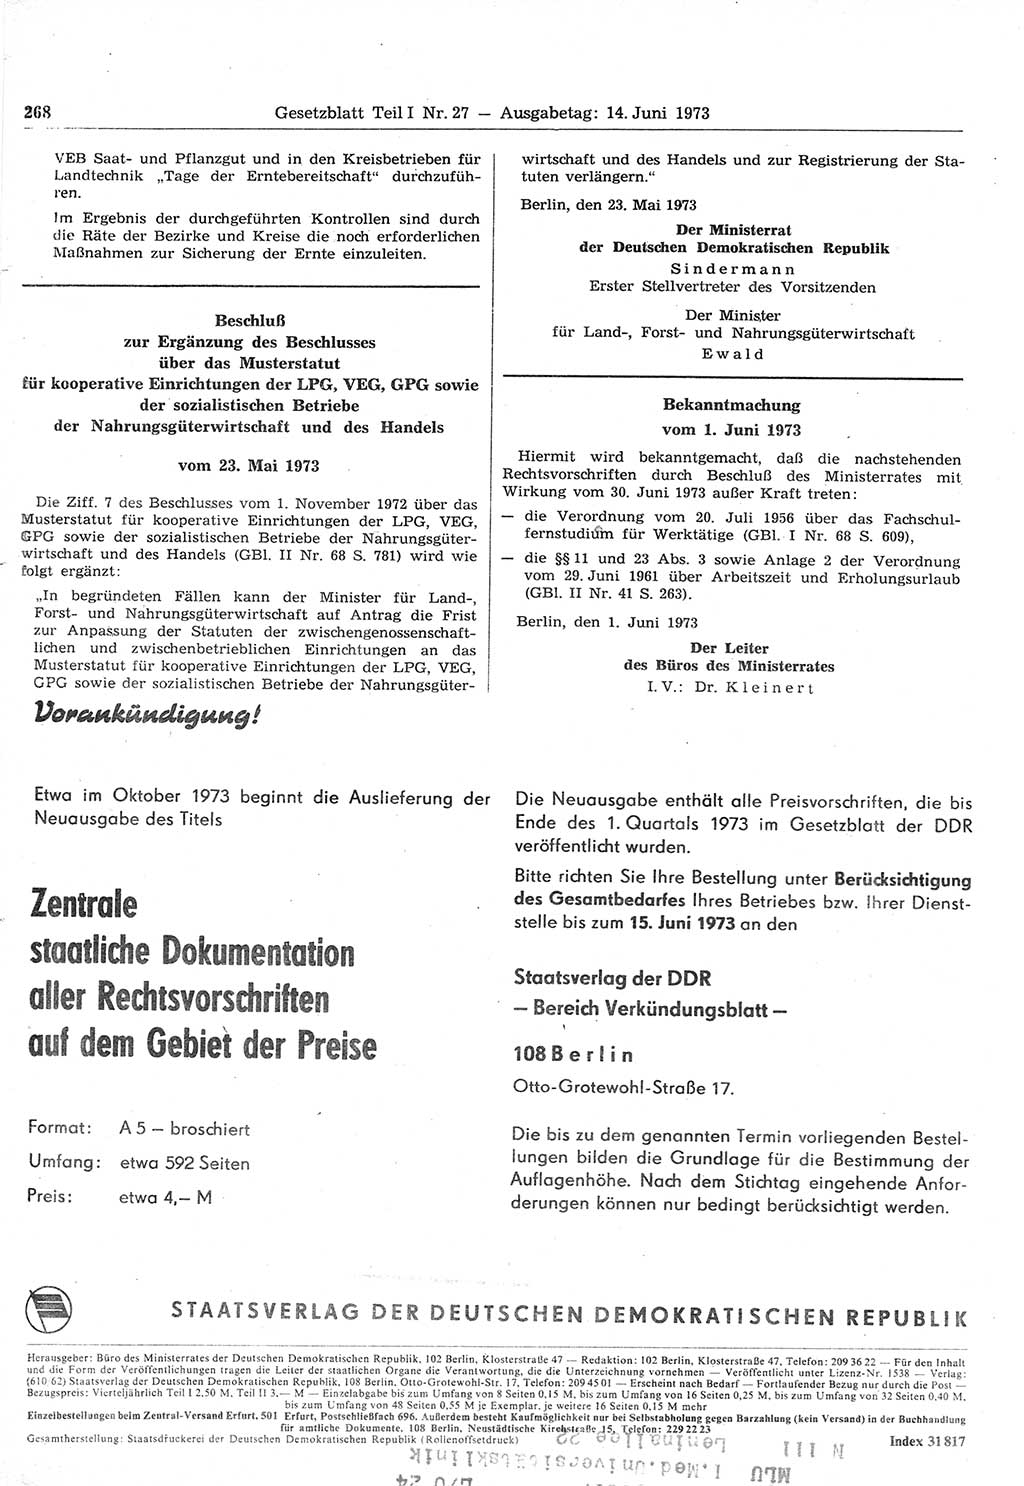 Gesetzblatt (GBl.) der Deutschen Demokratischen Republik (DDR) Teil Ⅰ 1973, Seite 268 (GBl. DDR Ⅰ 1973, S. 268)